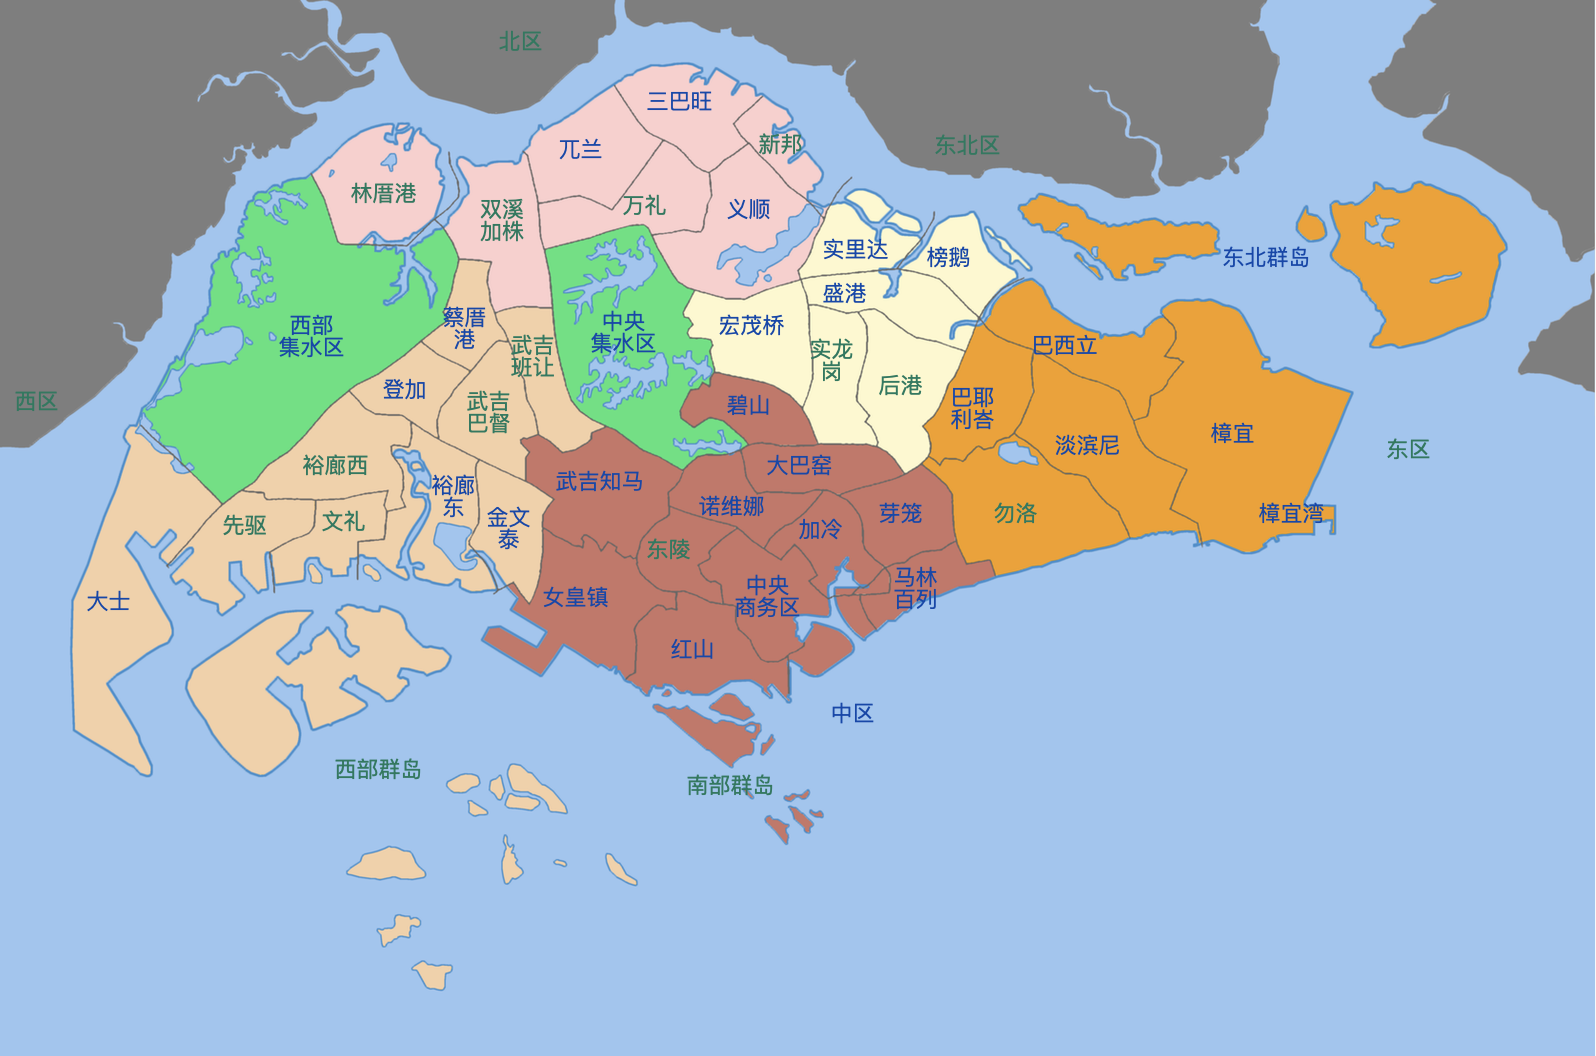 【干货】3分钟带您了解新加坡区域划分!